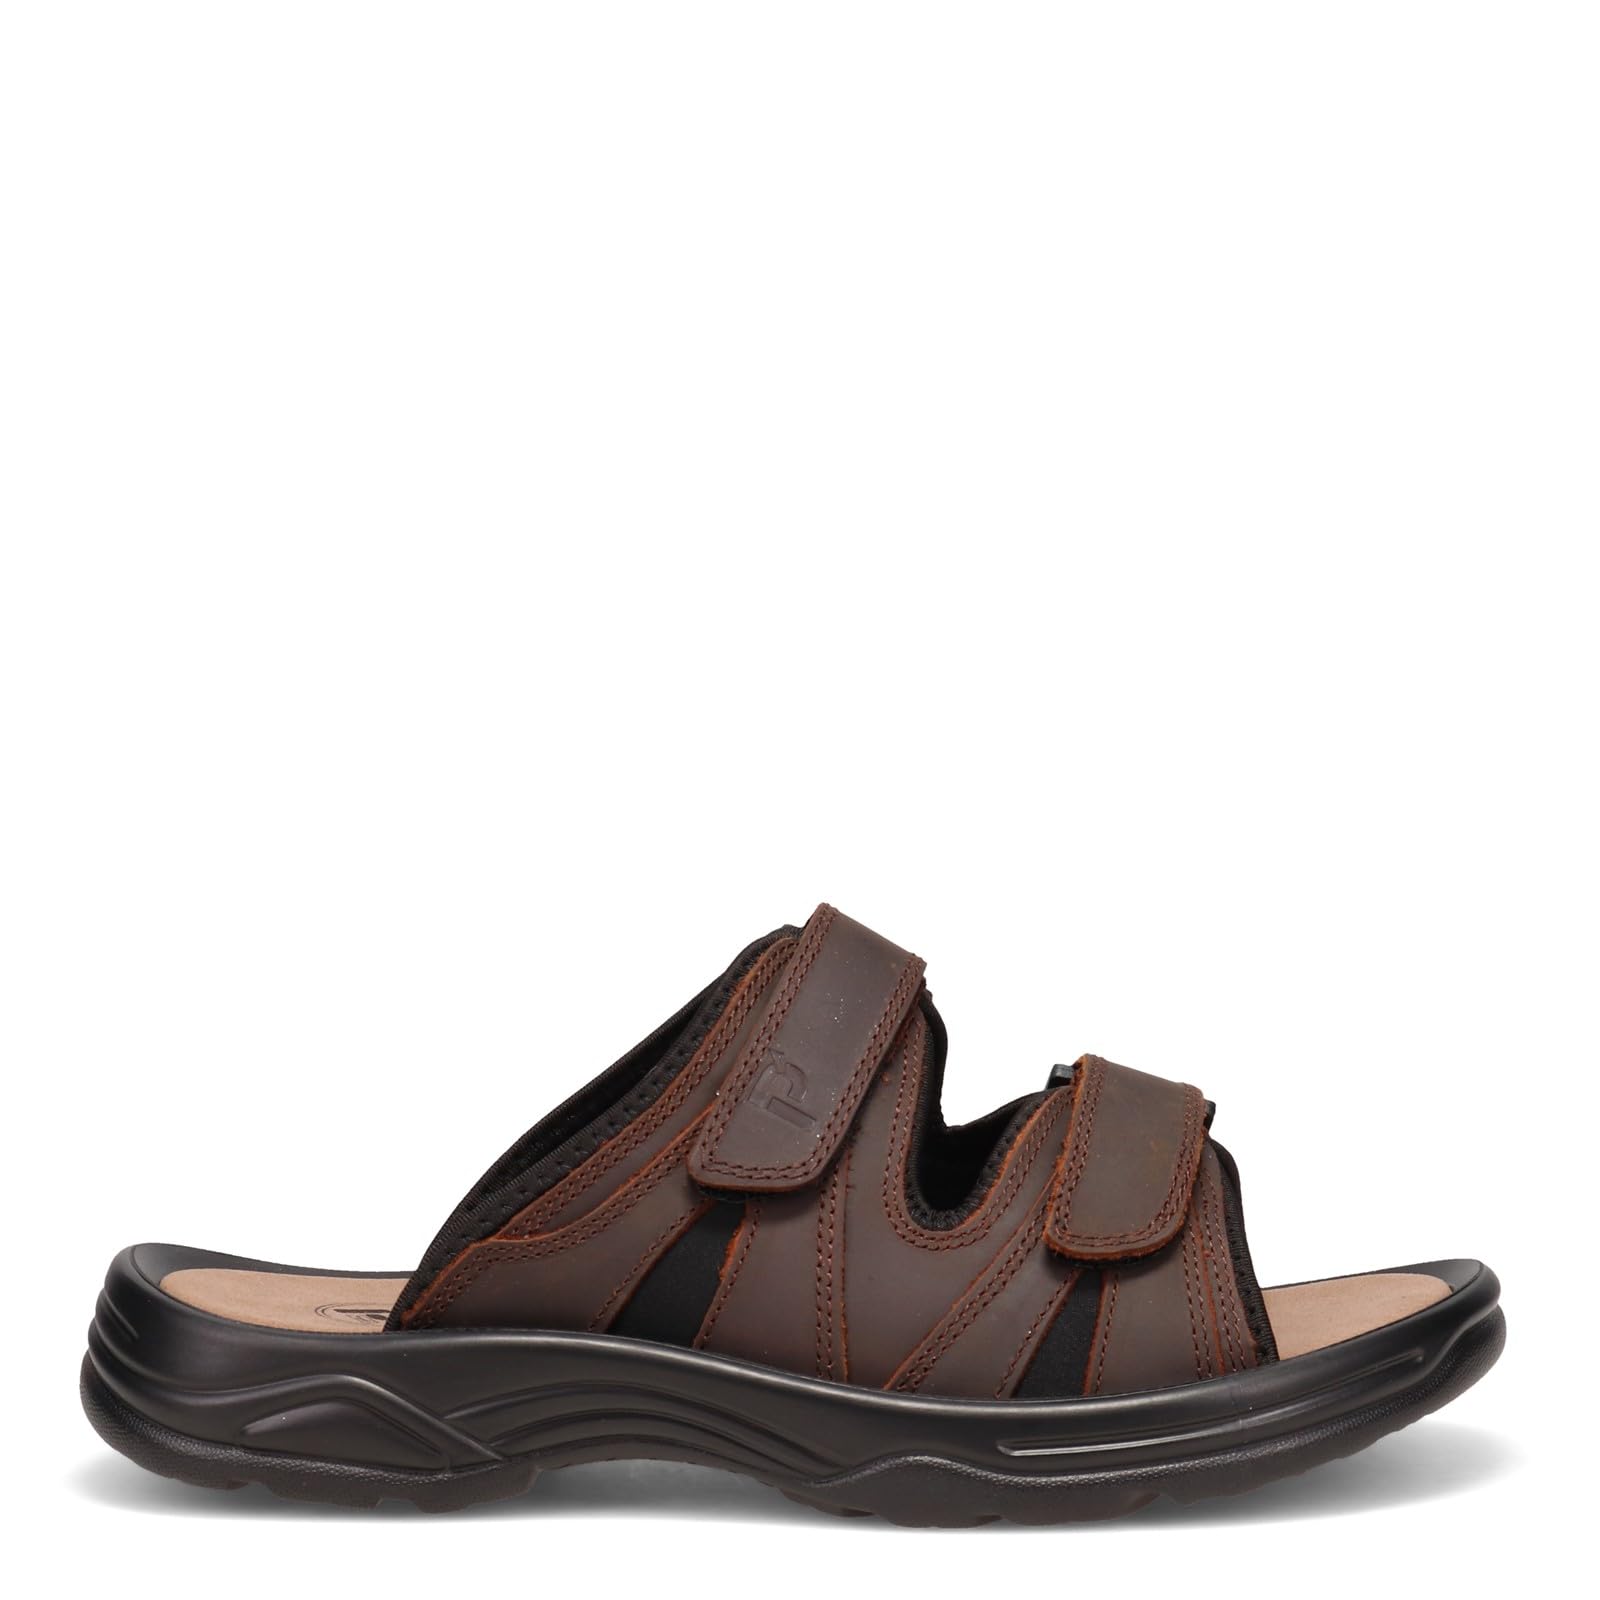 Propét Men's Vero Slide Sandal